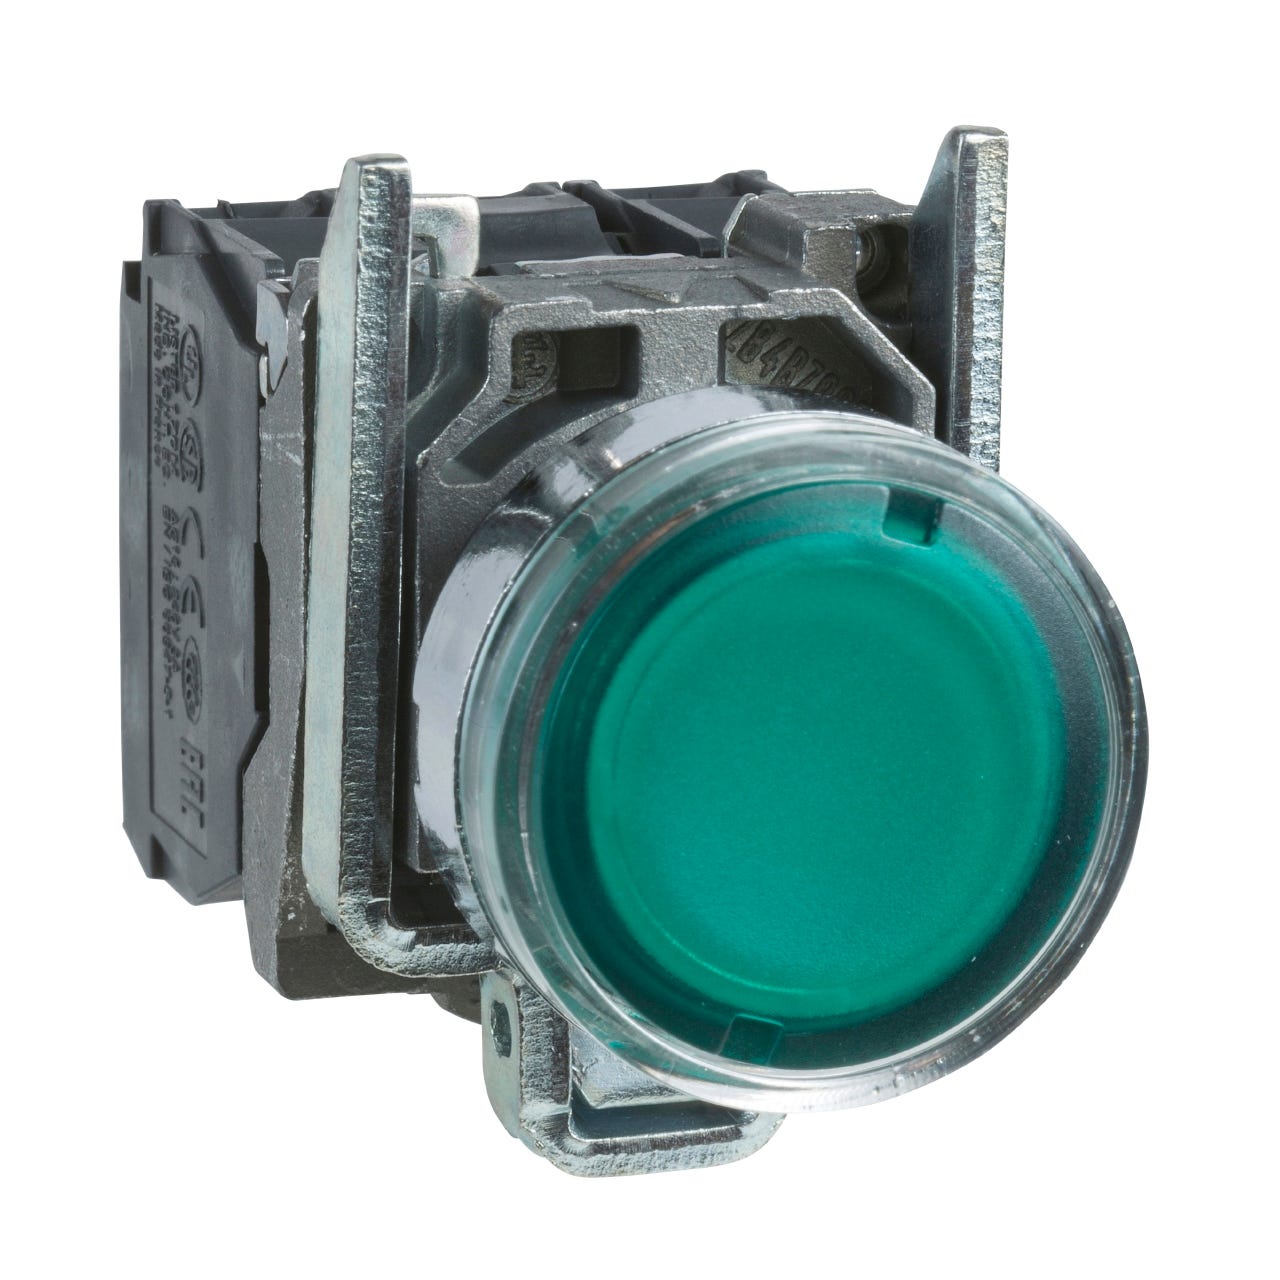 bouton poussoir lumineux - affleurant - 1no + 1nf - vert - 24v - schneider xb4bw33b5 0